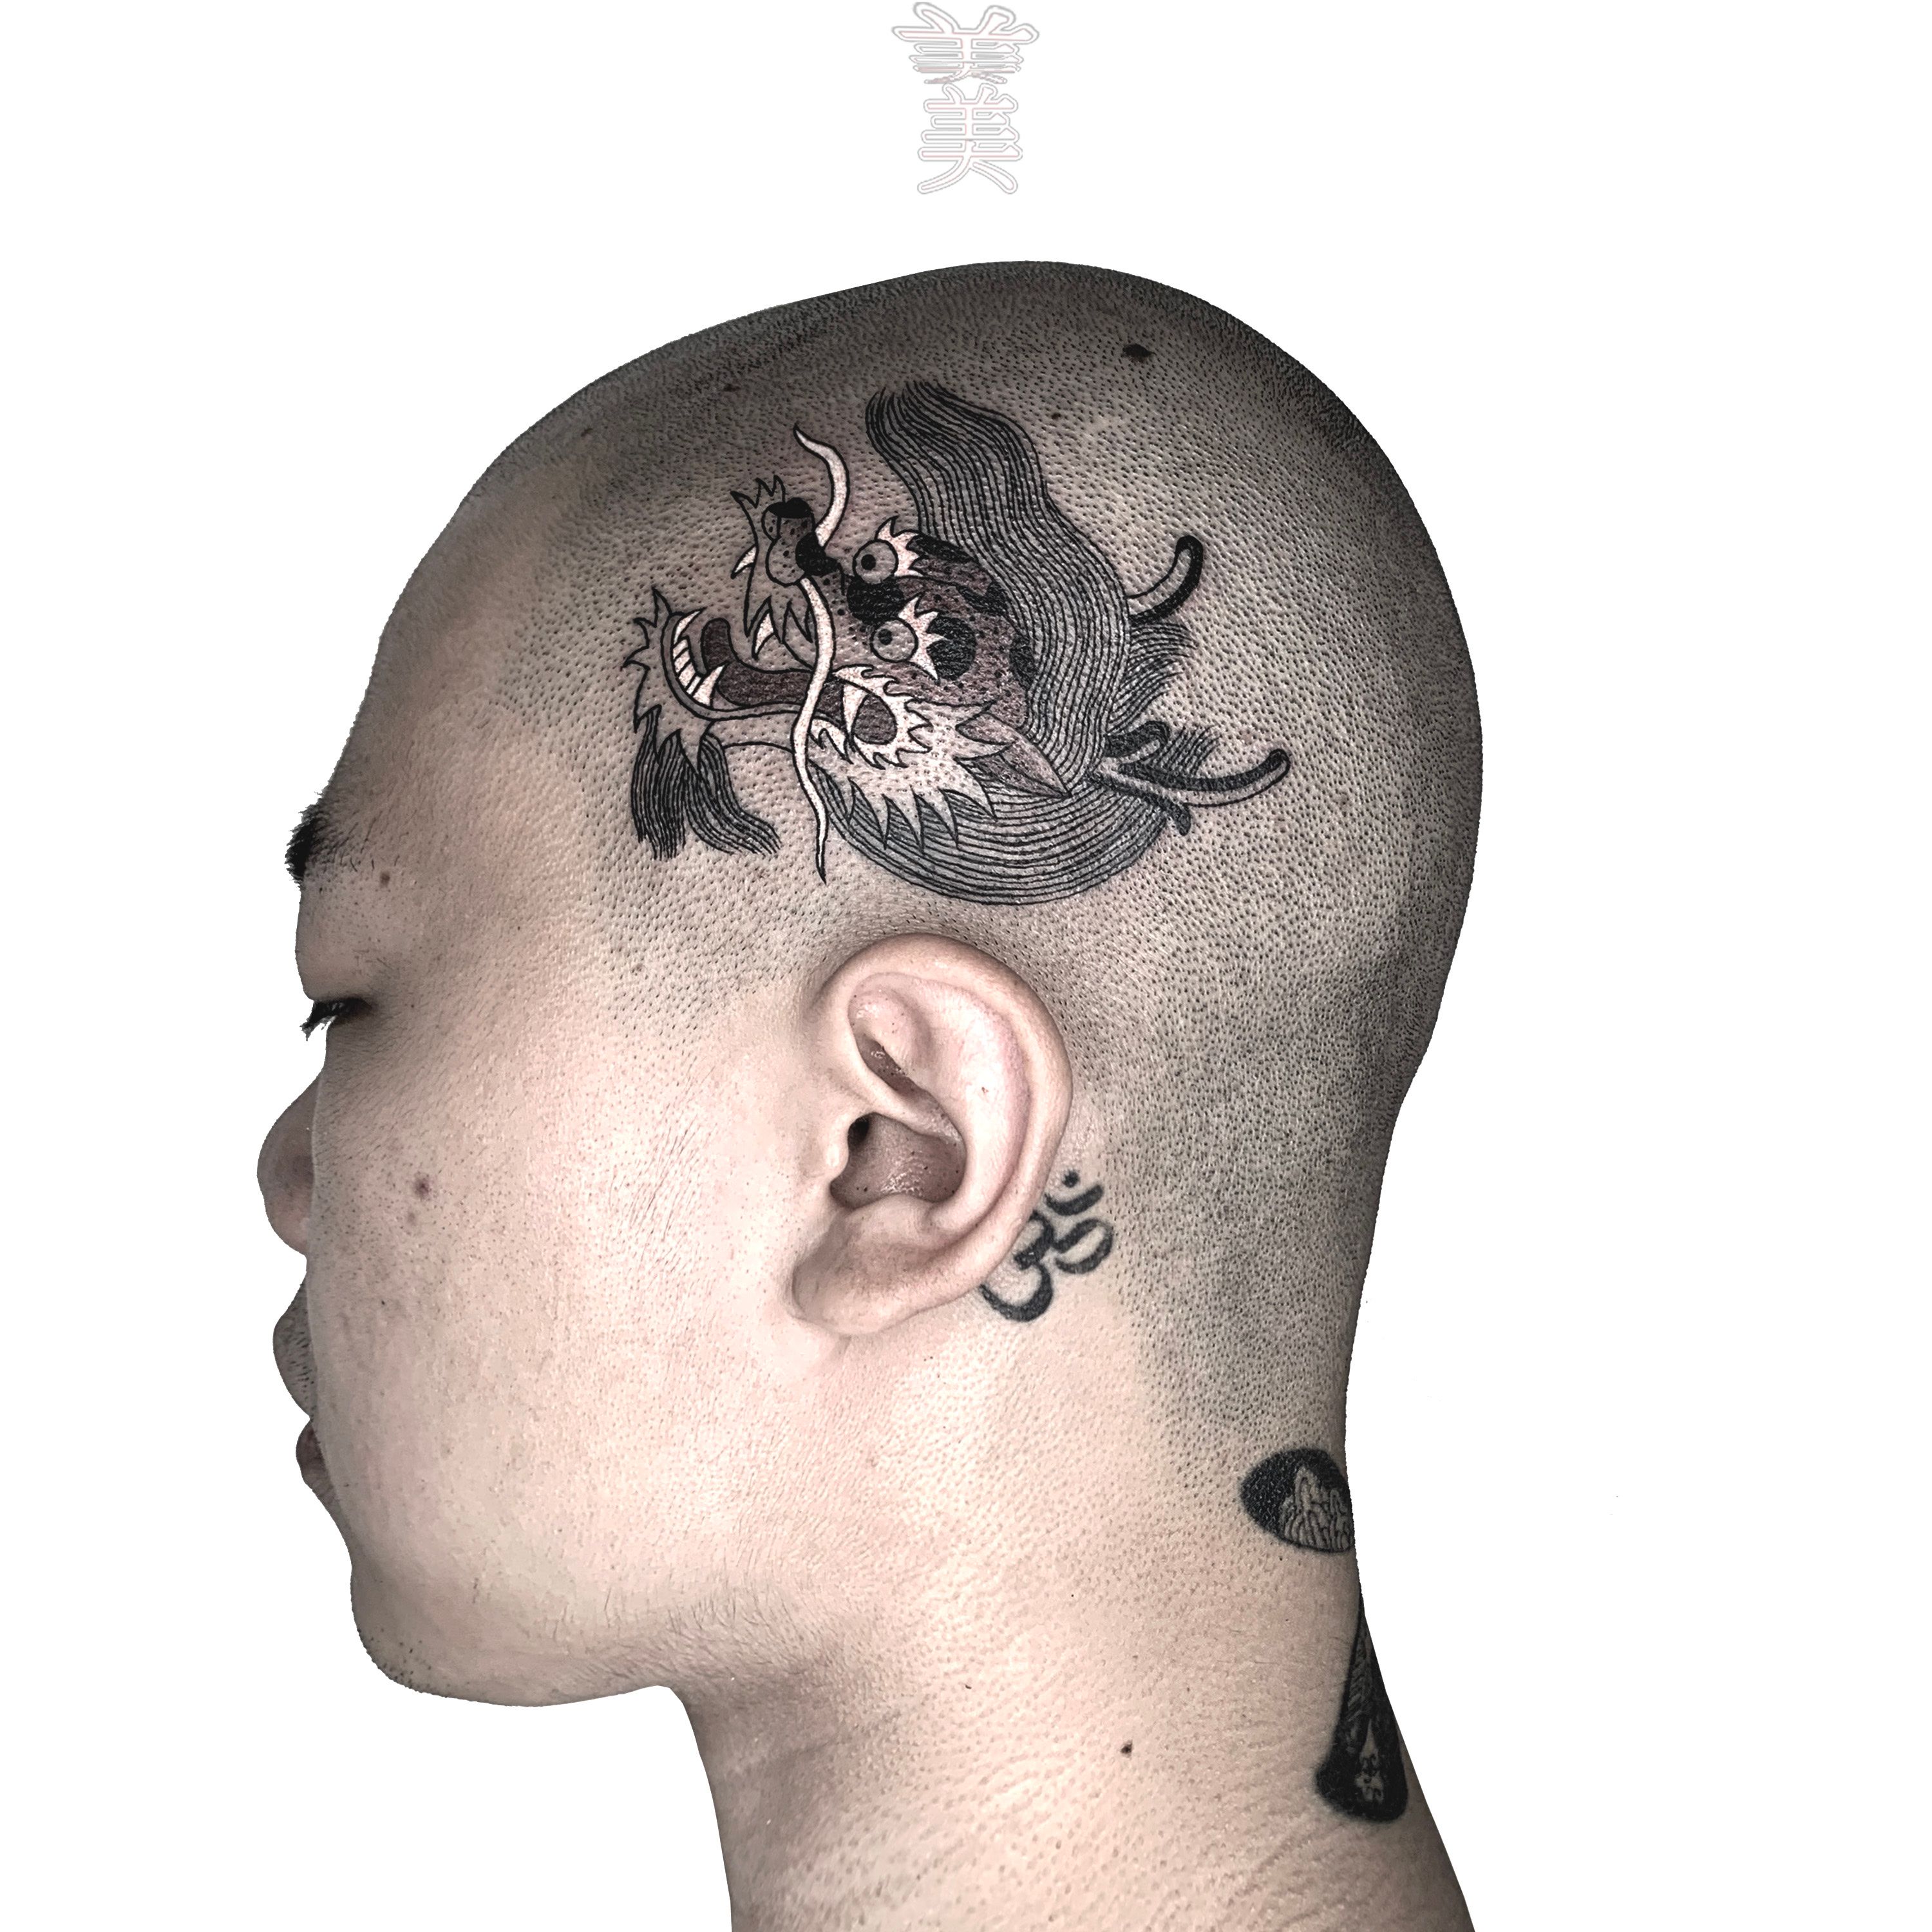 Tattoo uploaded by Robert Davies • Dragon Head Tattoo by Greg Christian # dragonhead #traditionaldragon #GregChristian #traditional • Tattoodo